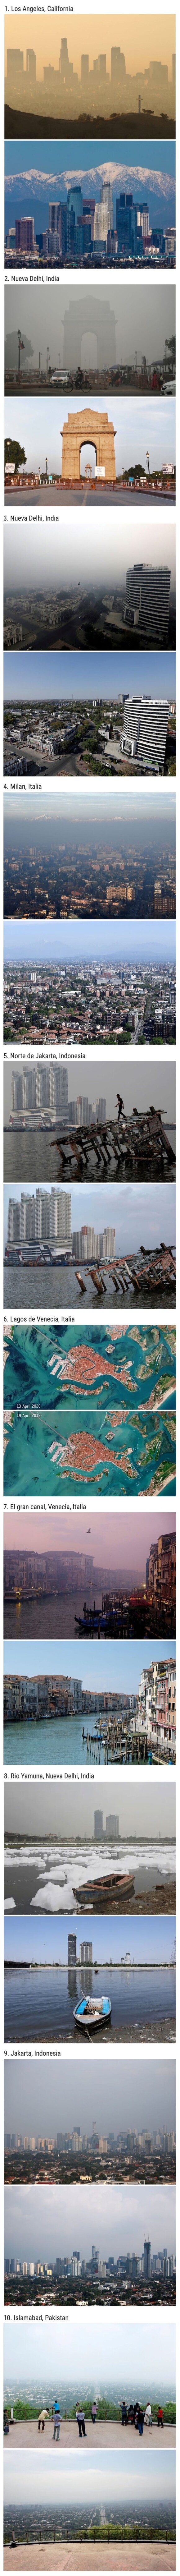 13414 - Comparaciones que muestran cómo la cuarentena ha reducido la contaminación en grandes ciudades